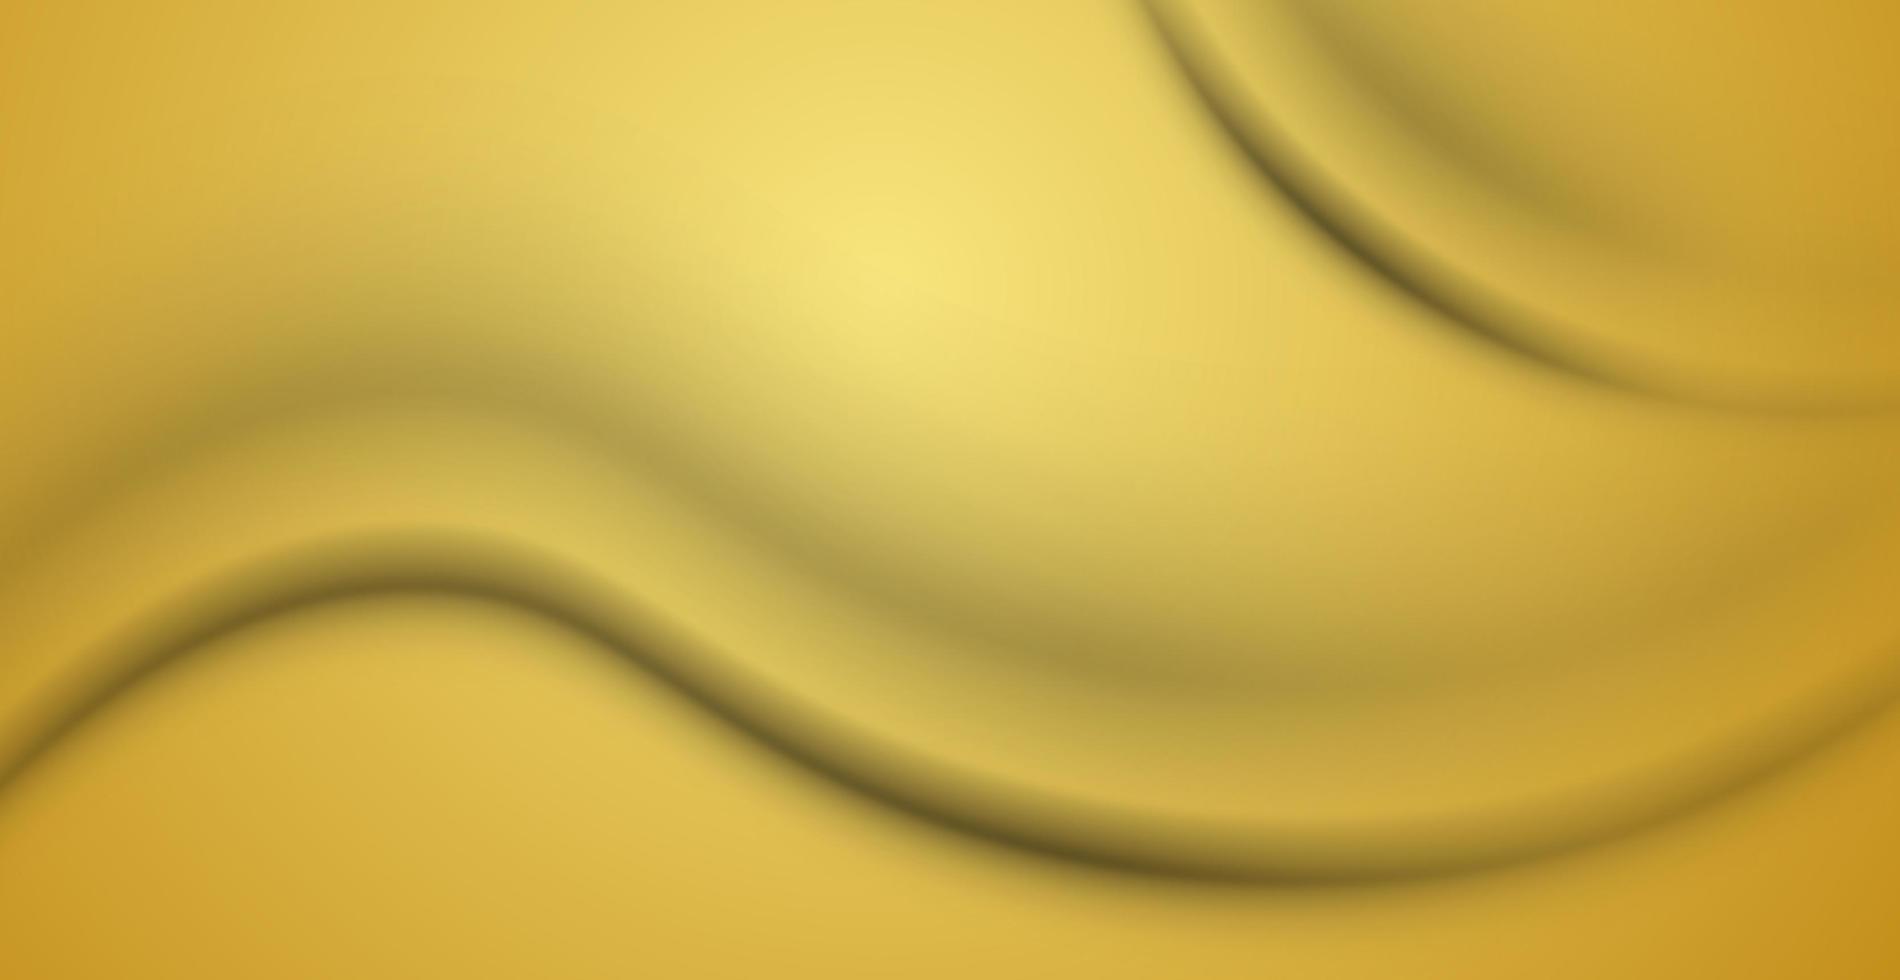 texture de fond jaune froissé réaliste, plis - vecteur